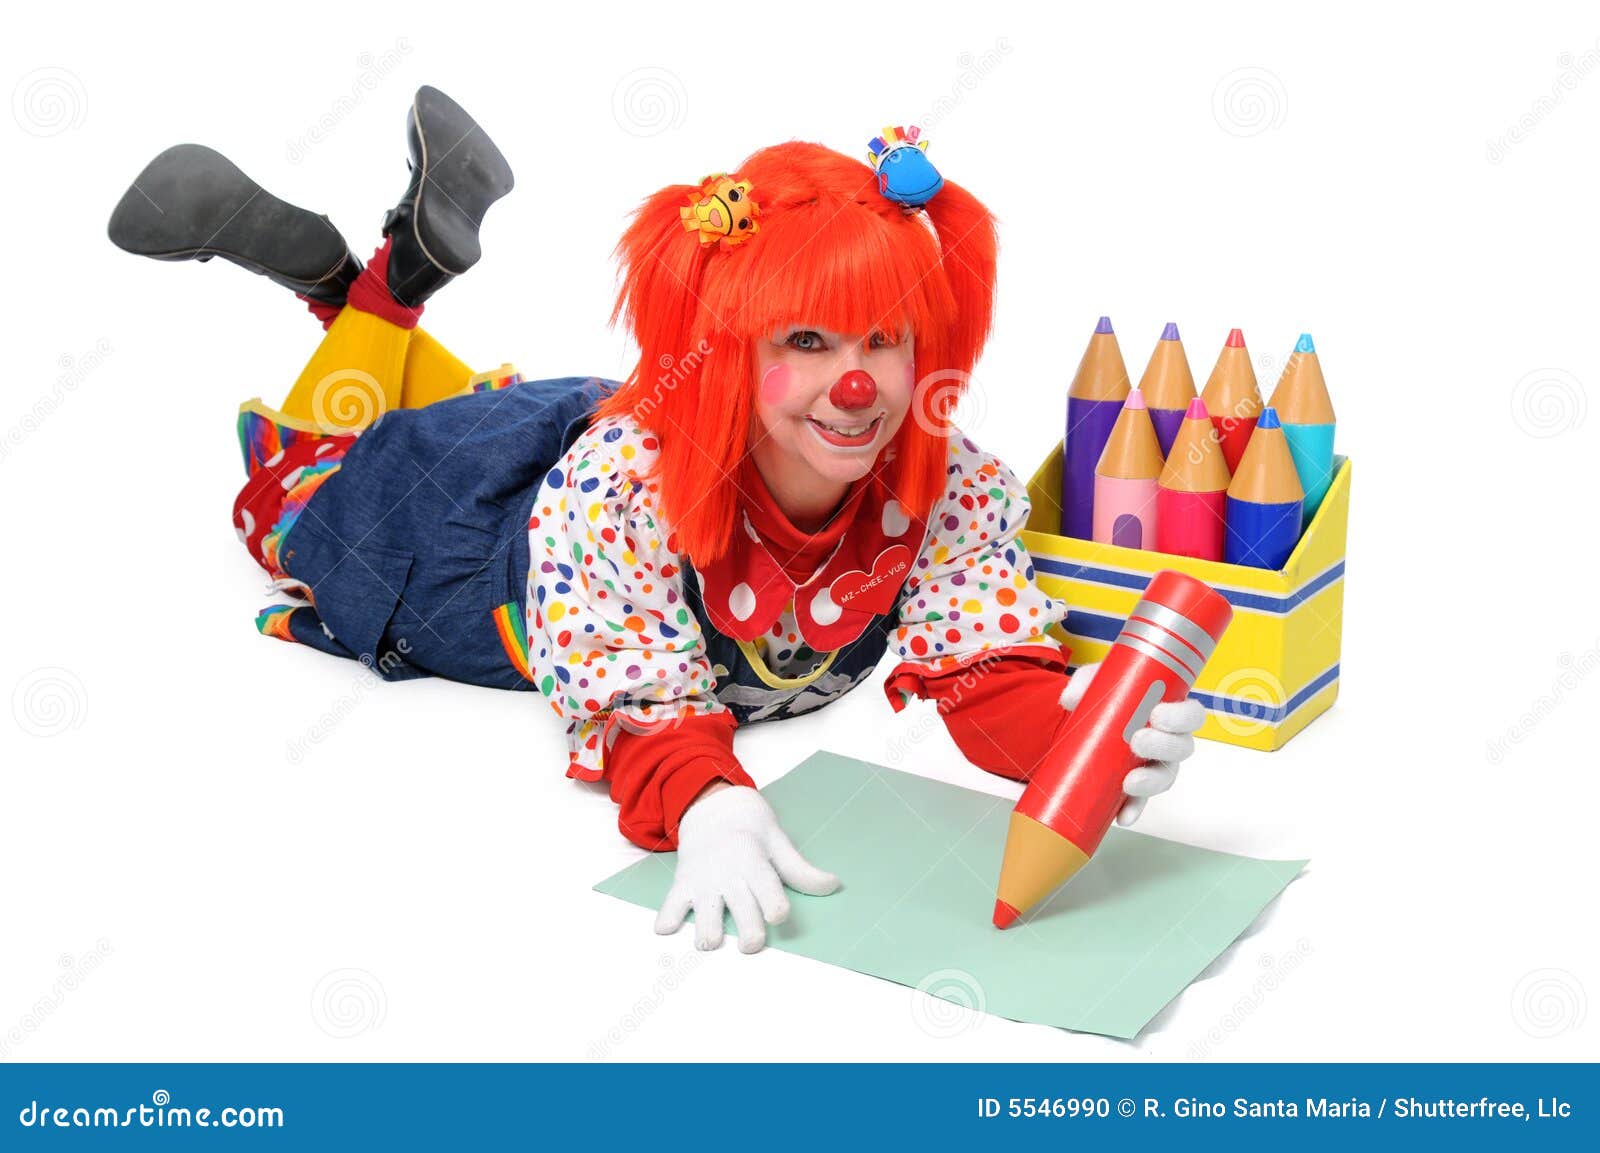 Clown établissant l'écriture. Clown fixant sur l'étage et écrivant avec de grands crayons de couleur